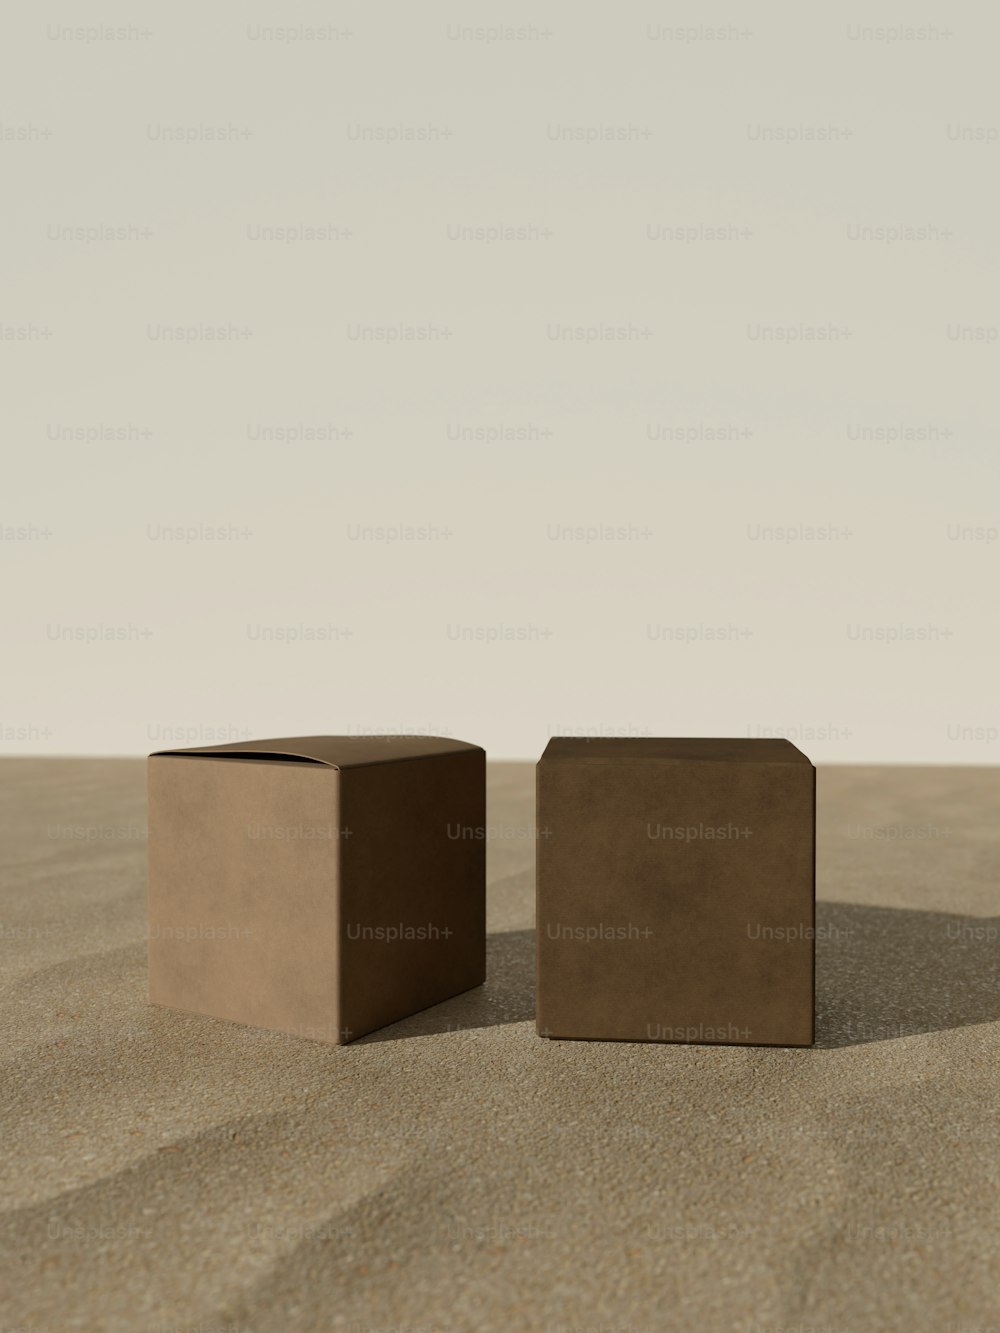 Un par de cajas sentadas en la parte superior de una playa de arena